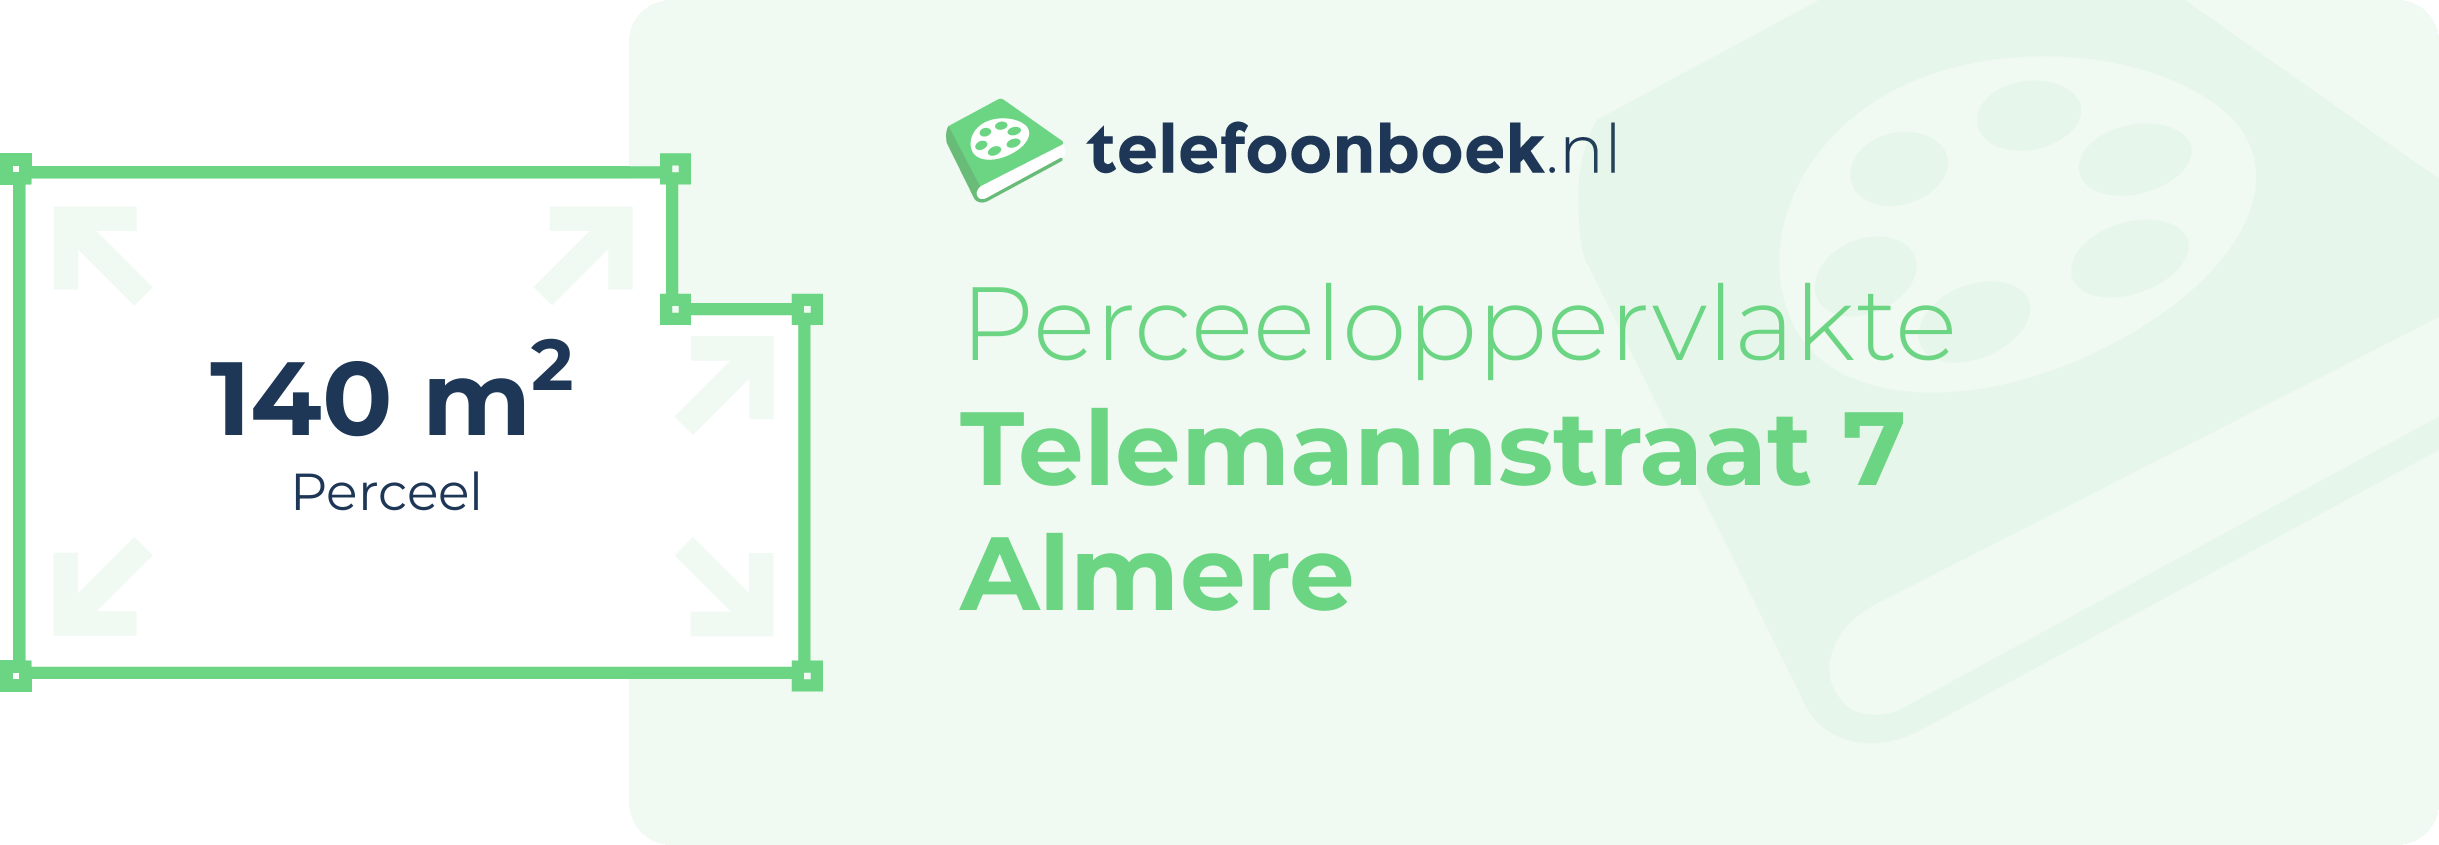 Perceeloppervlakte Telemannstraat 7 Almere